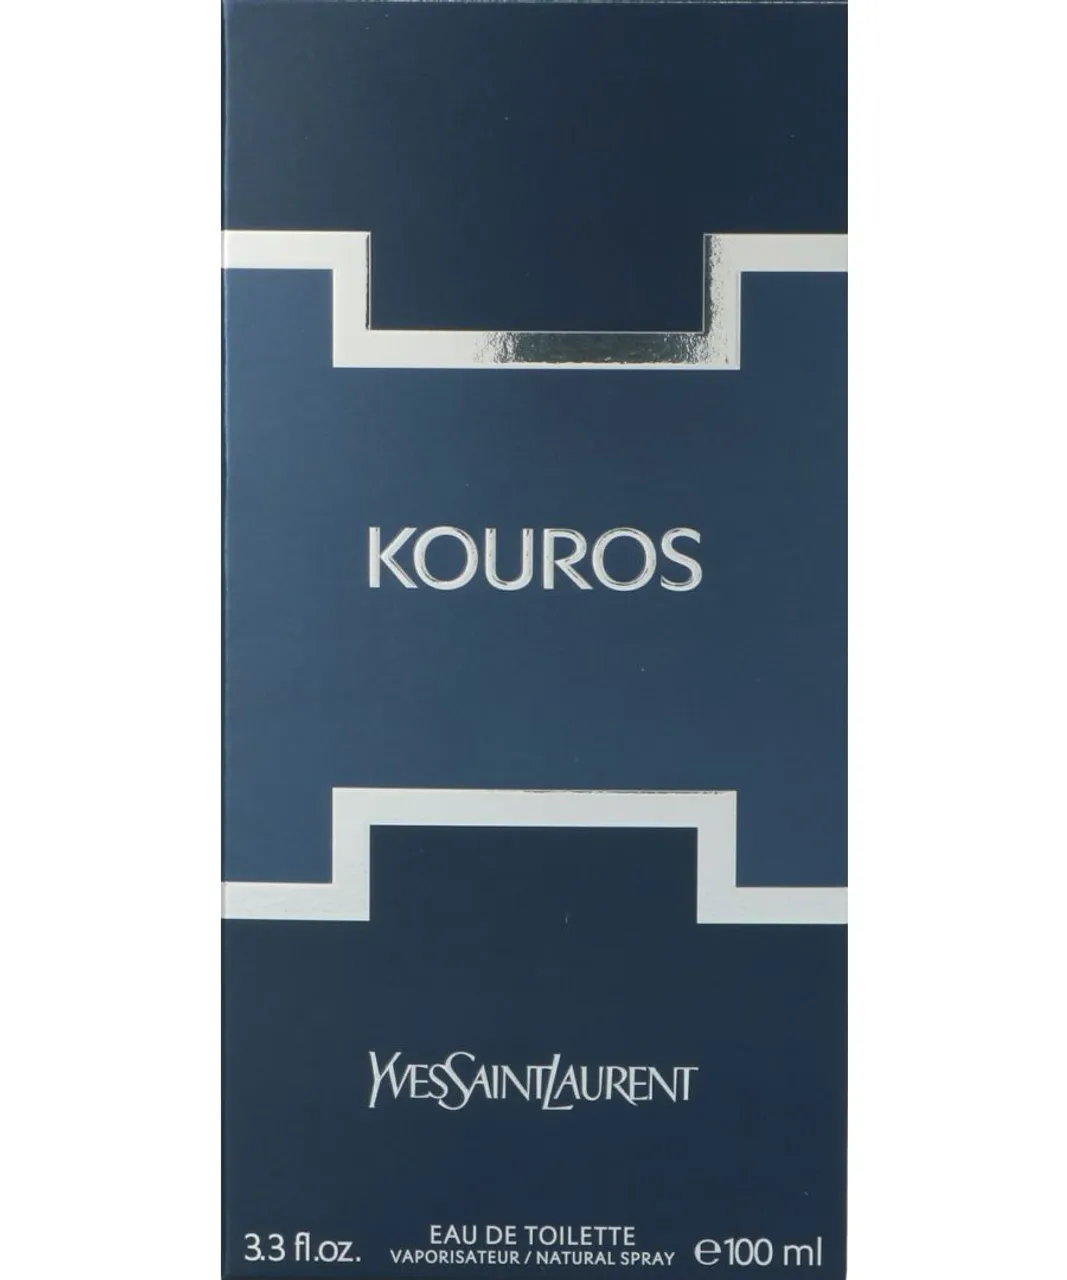 Yves Saint Laurent Mens Kouros Eau de Toilette 100ml - NA - One Size